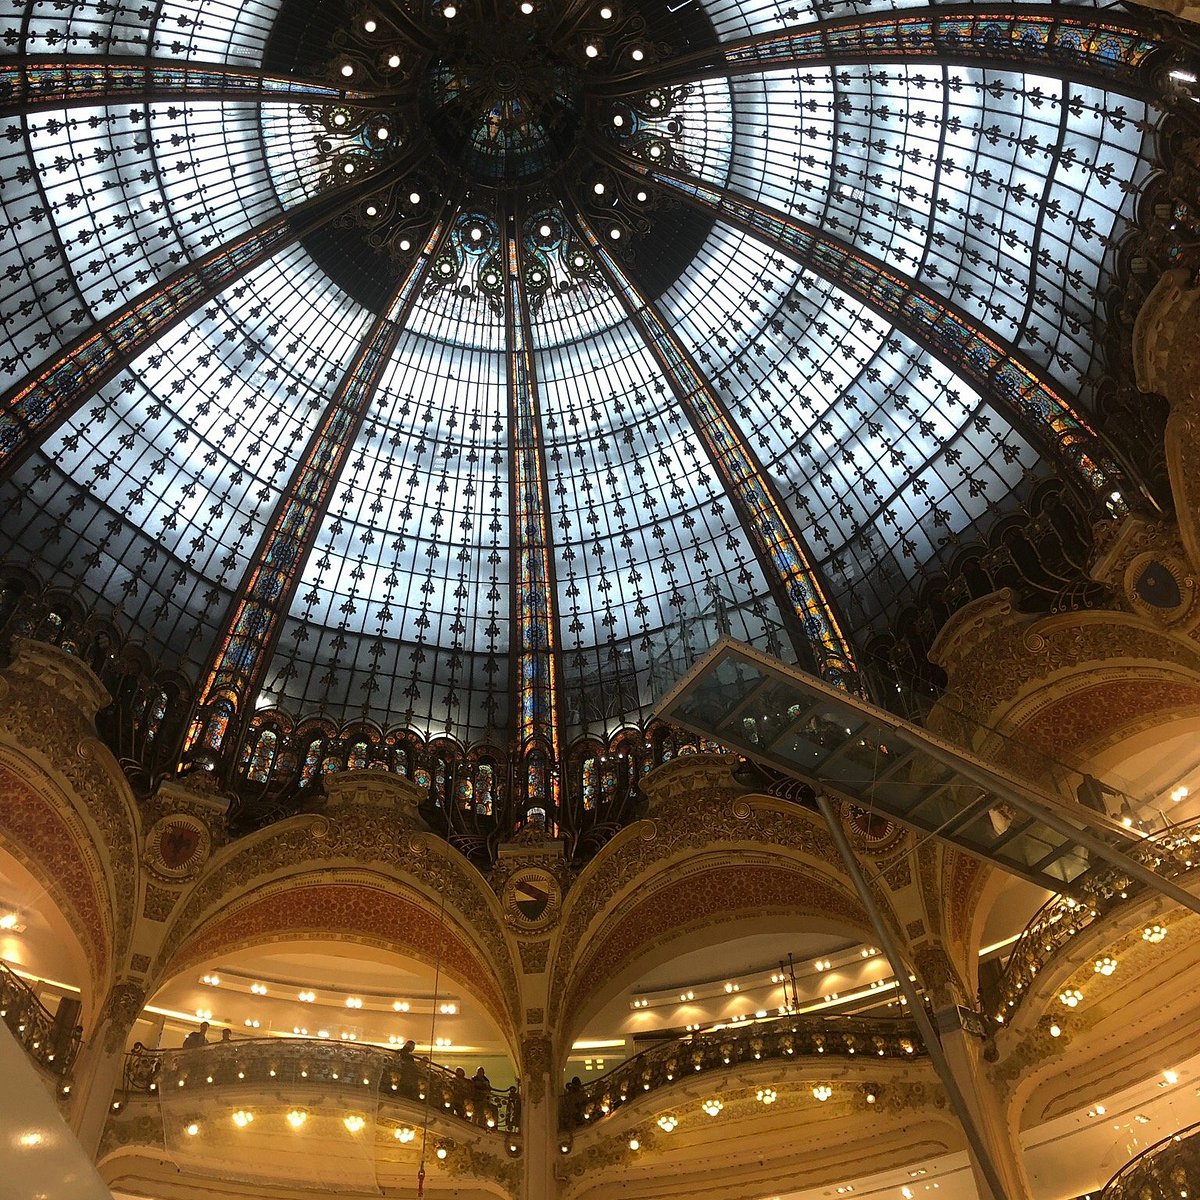 Galeries Lafayette Opens on The Champs Elysées: A Marvelous